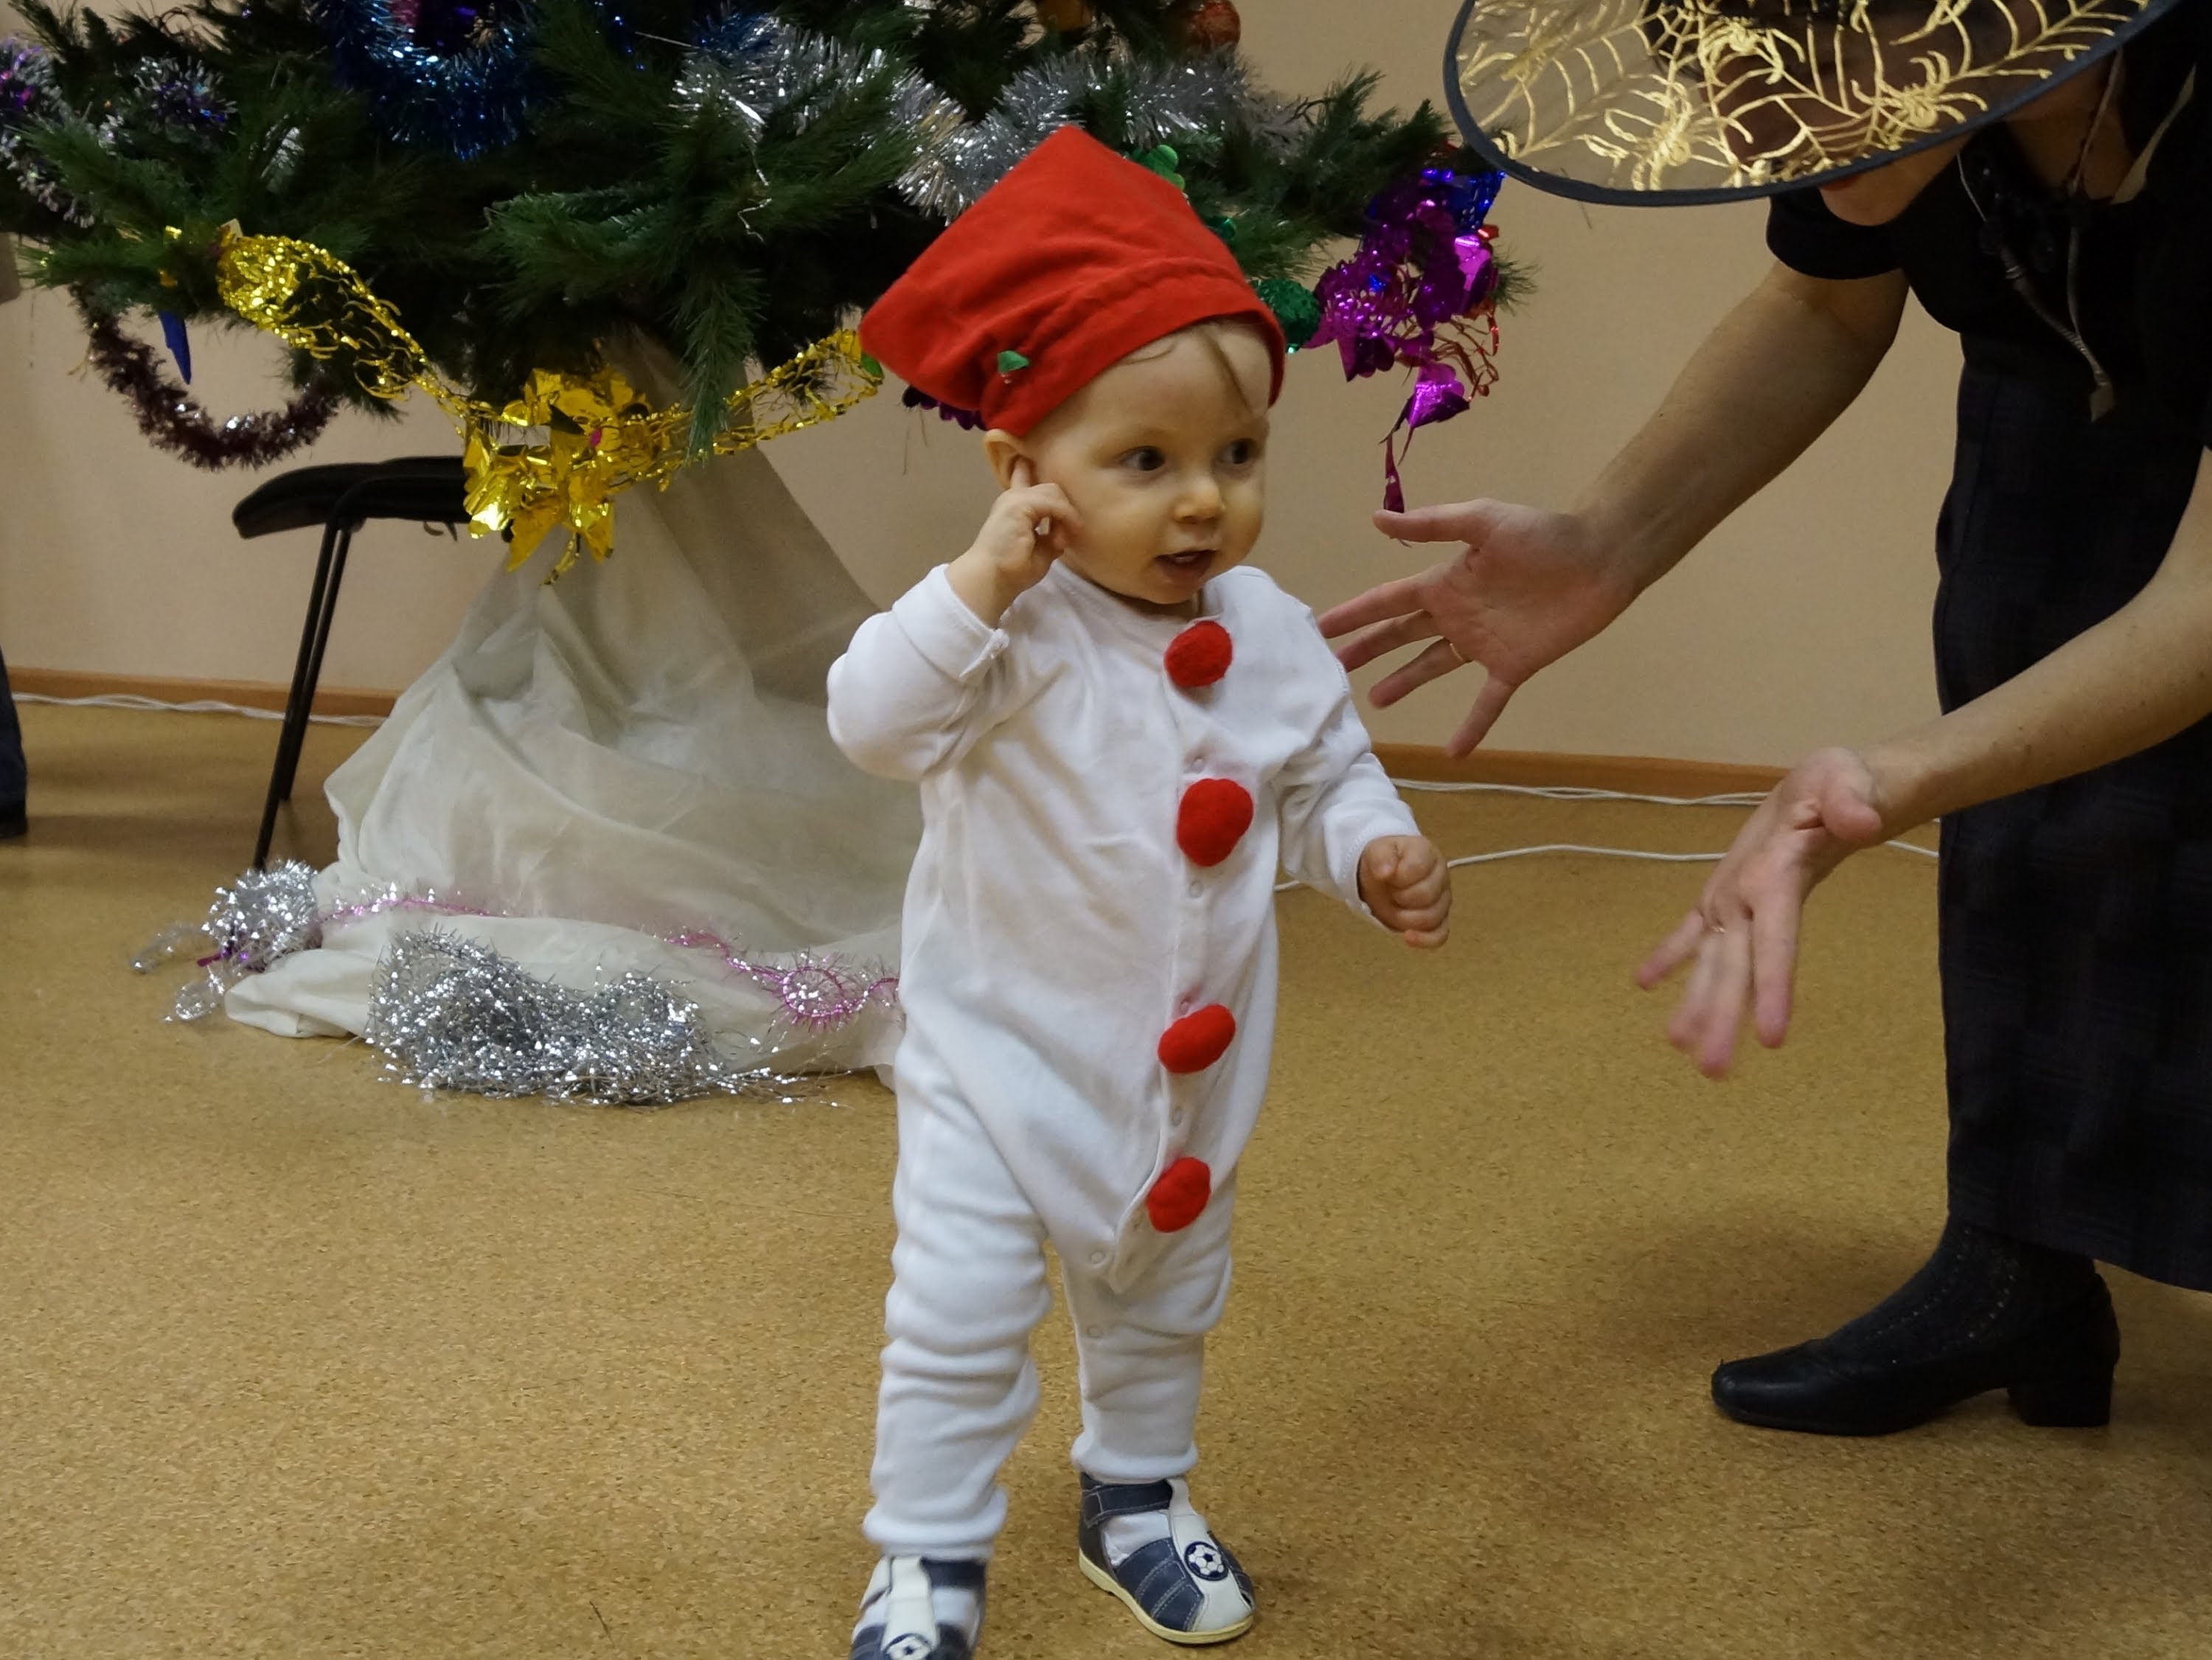 КОСТЮМ КОСМОНАВТА детский: как своими руками сделать карнавальный костюм для мальчика на утренник?